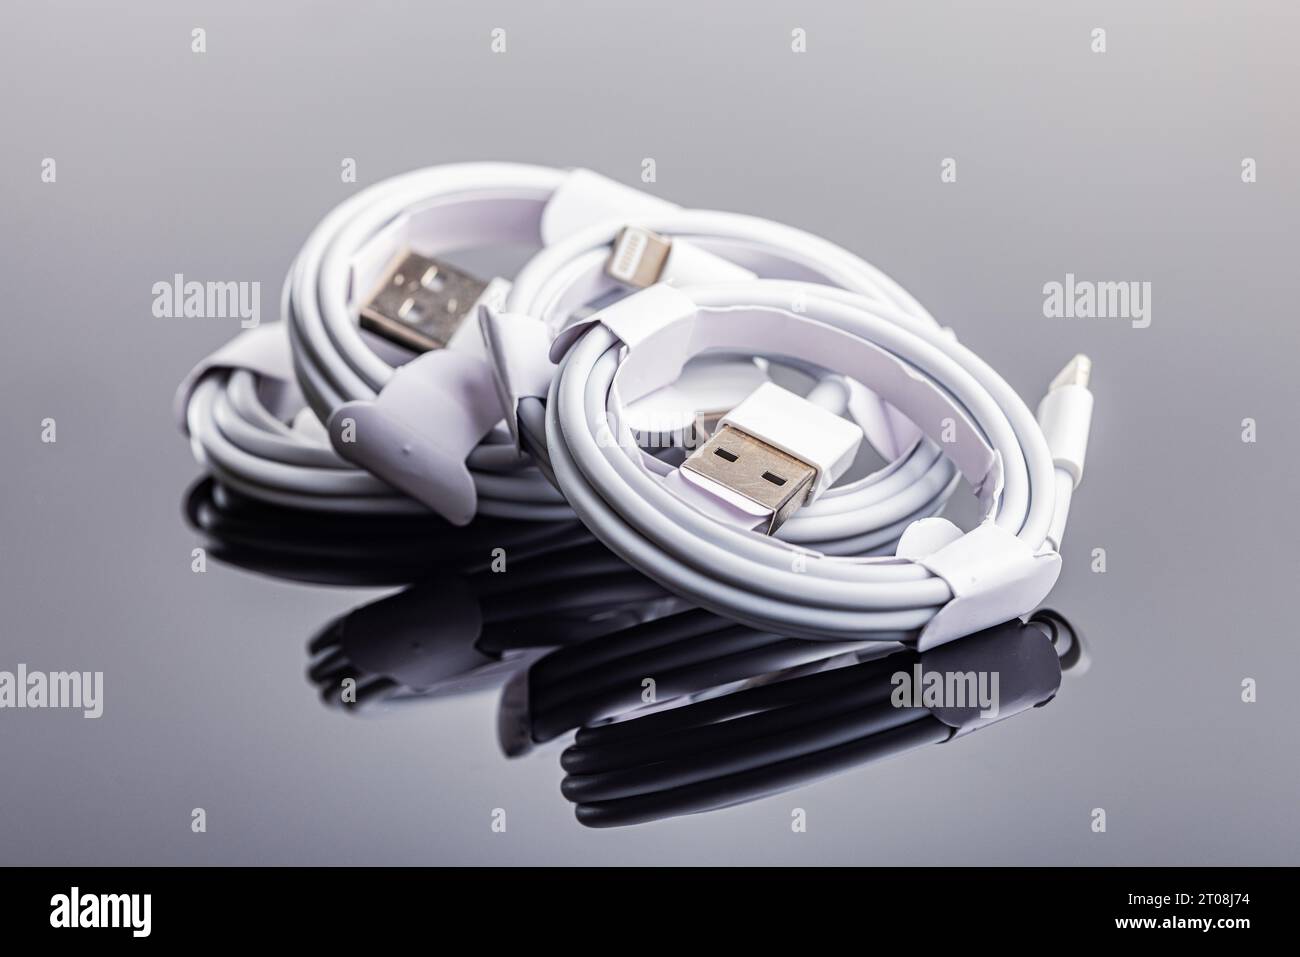 Câbles de chargement usb blancs sur la table miroir. Banque D'Images